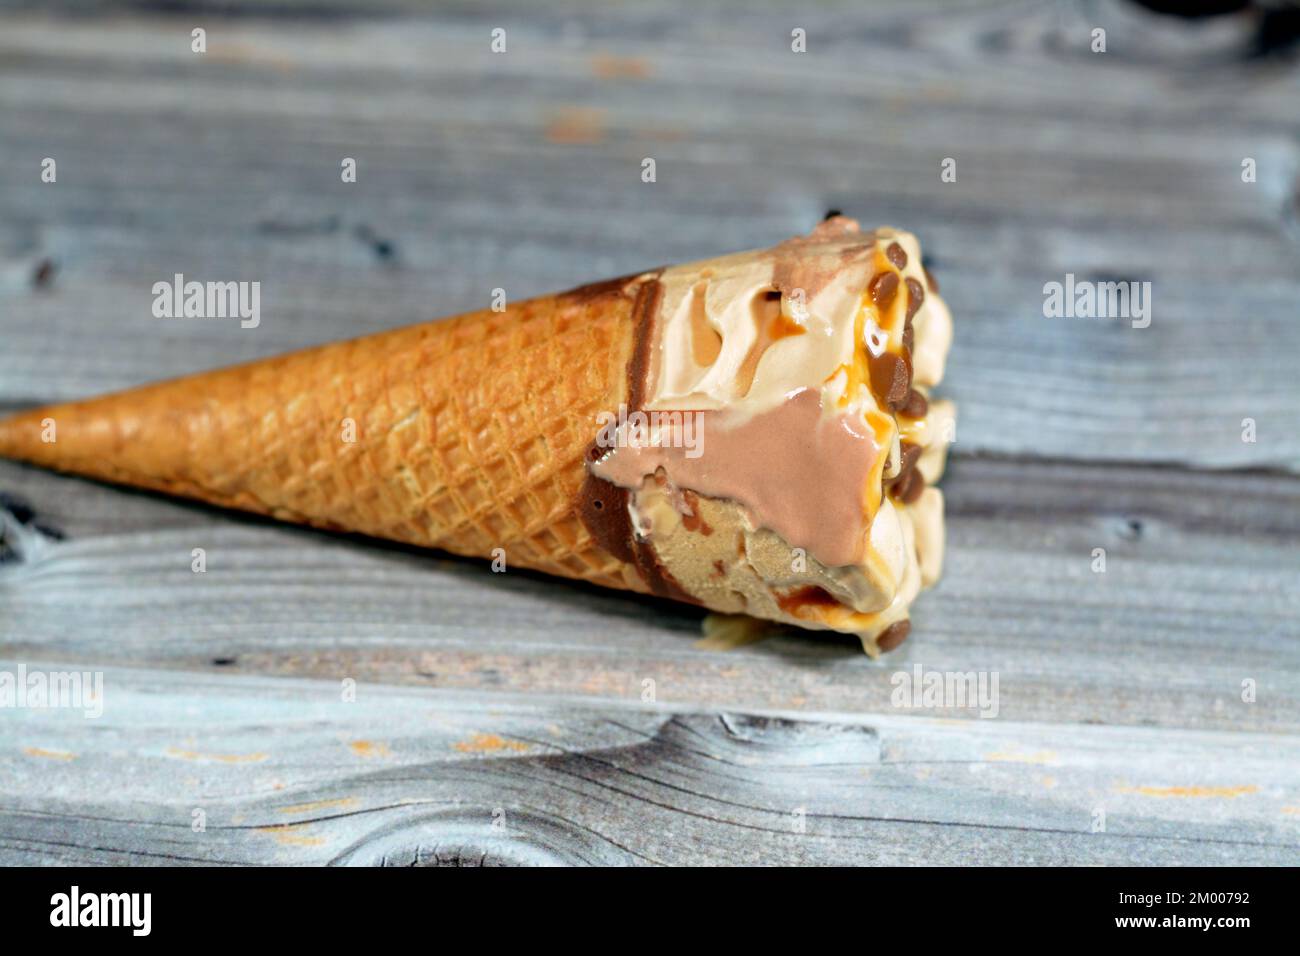 Eiscreme aus Kakao-, Schokoladen- und Vanilleeis mit Schokoladenstückchen in knusprigen Waffeln, selektiver Fokus auf schmelzendes kaltes Eis Stockfoto